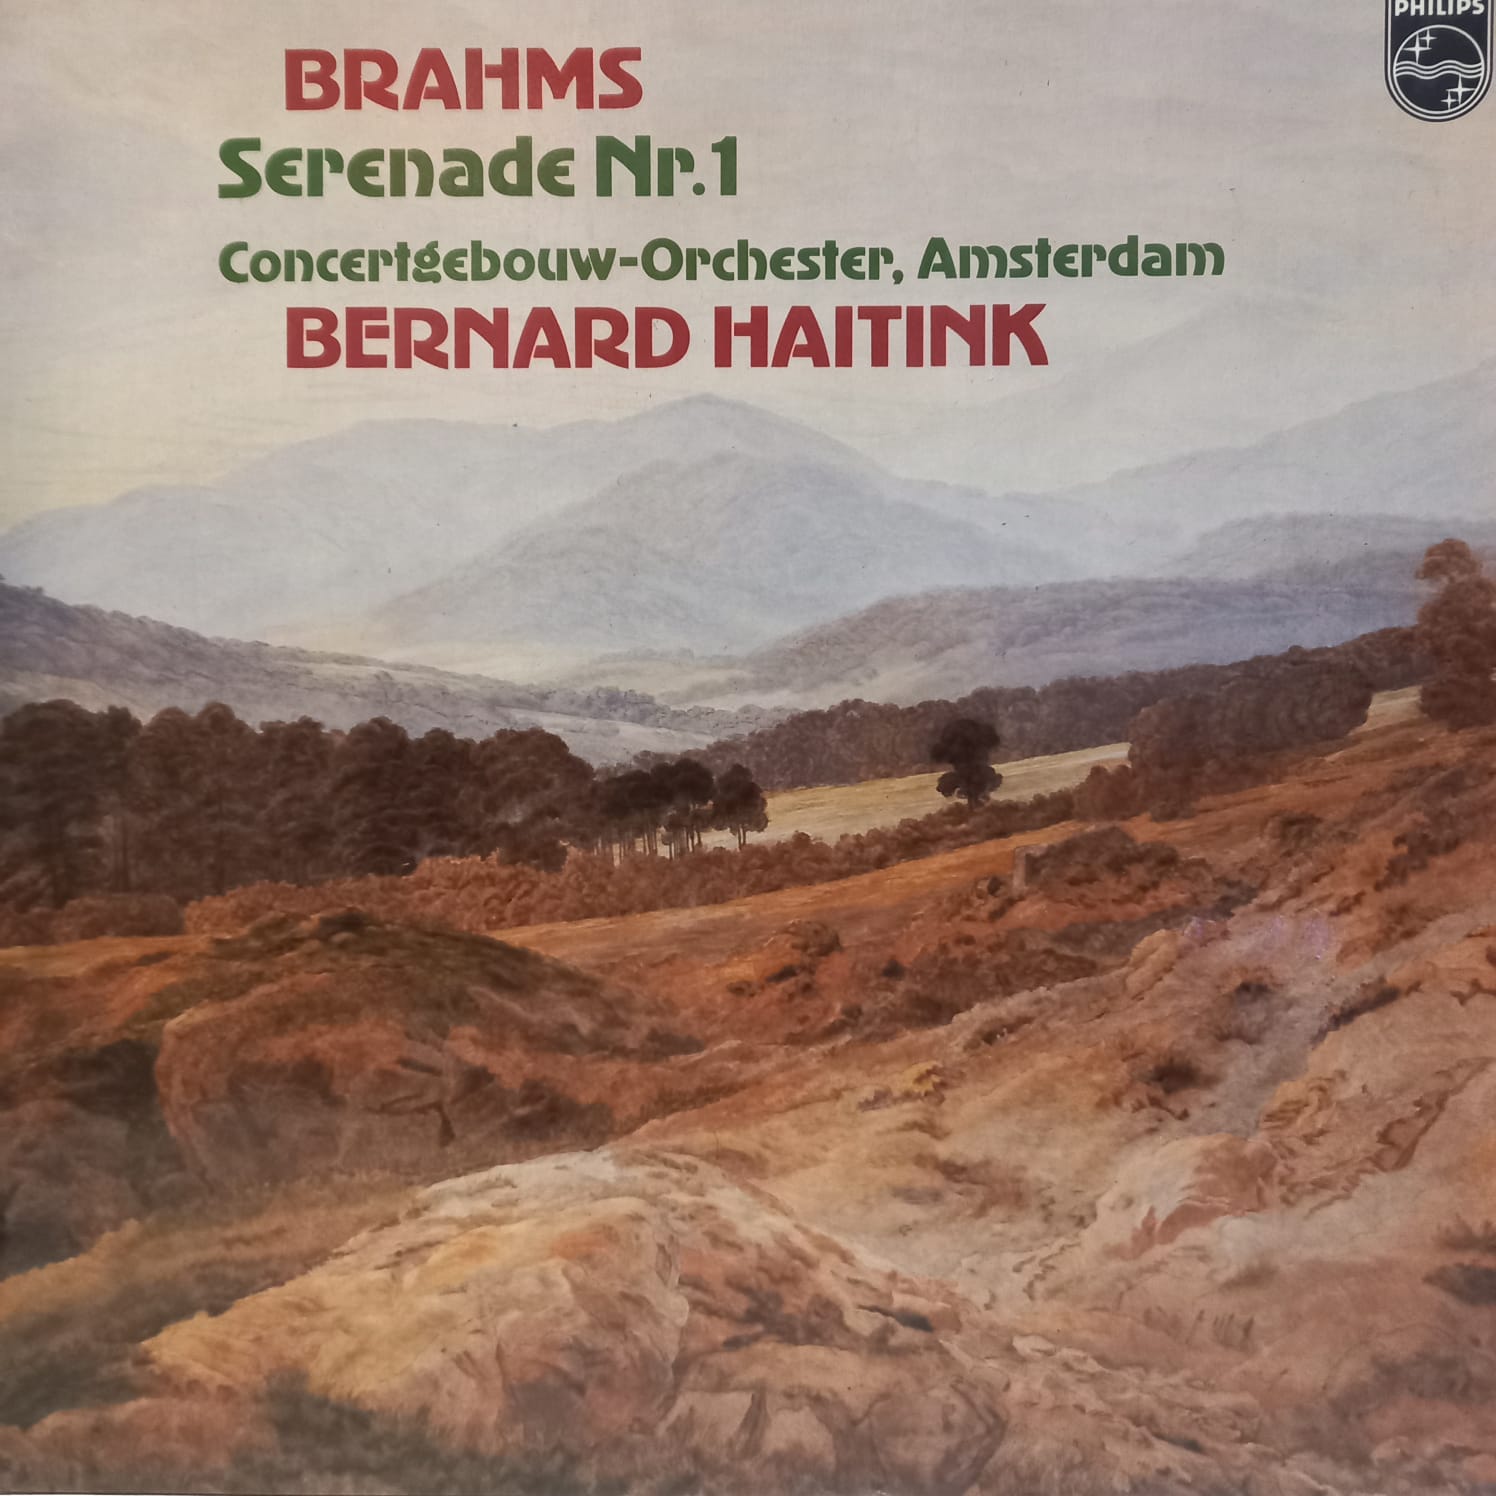 BRAHMS – BERNARD HAITINK – SERENADE NR. 1 ON